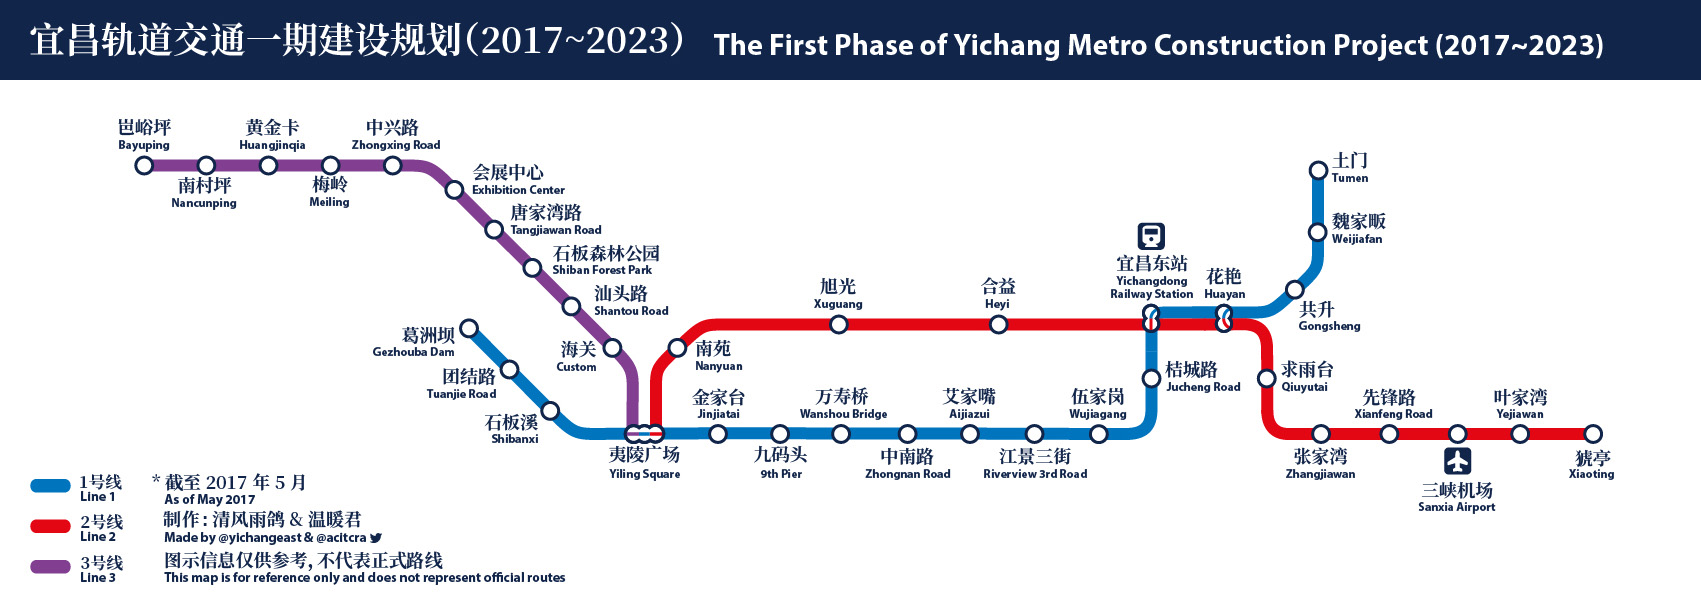 宜昌城市轨道交通一期建设规划线路示意图 V2.0